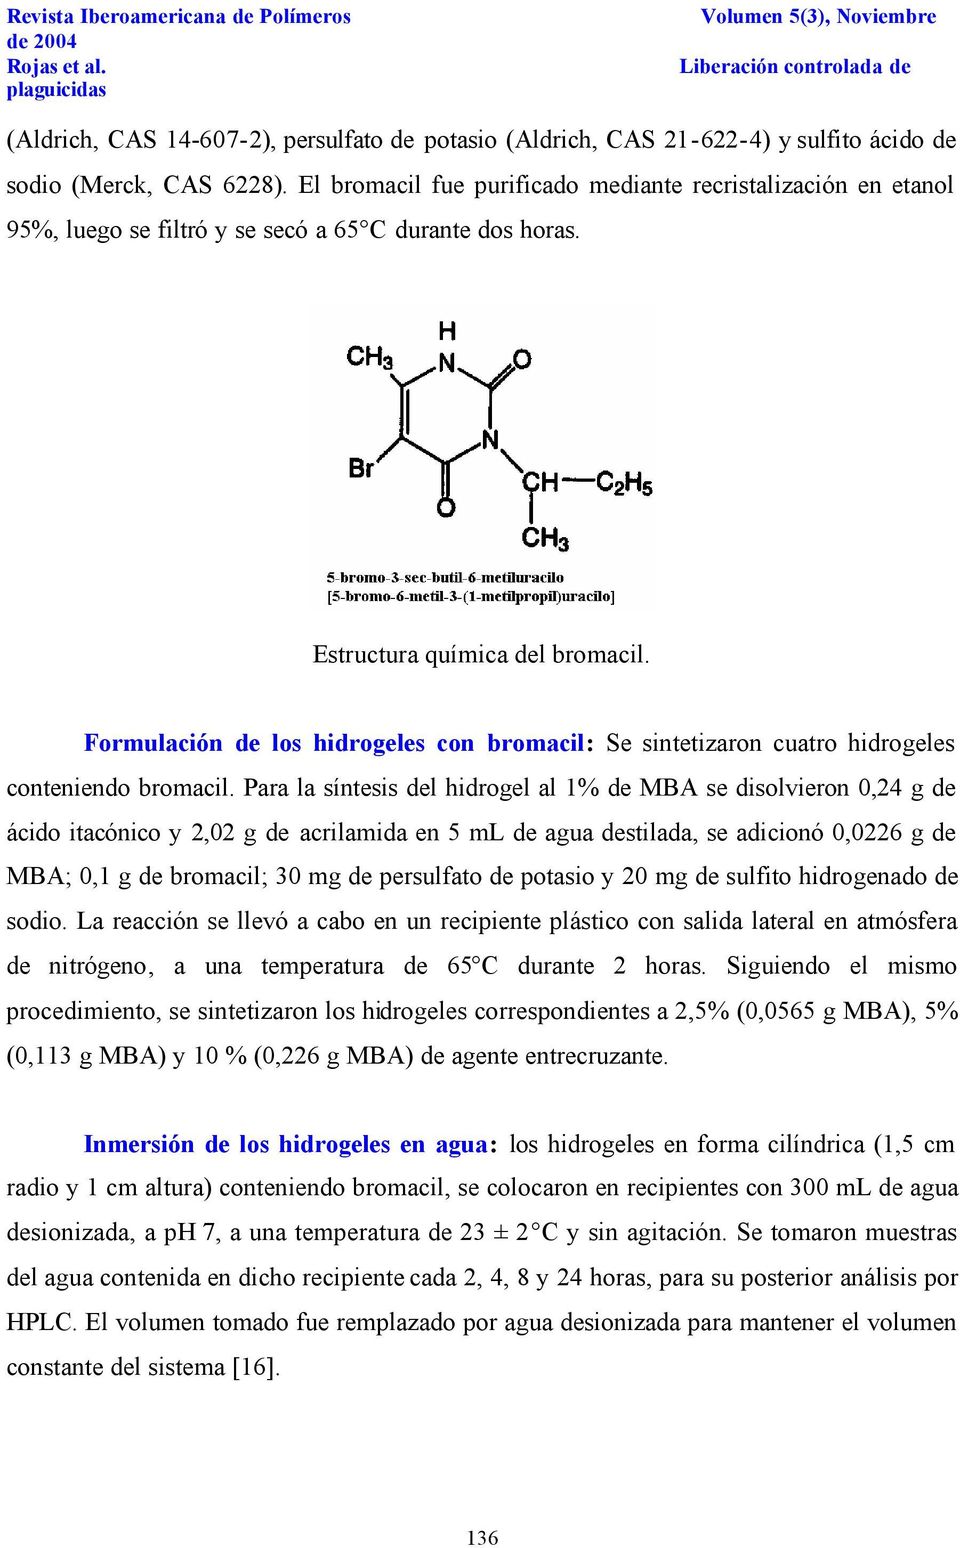 Formulación de los hidrogeles con bromacil: Se sintetizaron cuatro hidrogeles conteniendo bromacil.